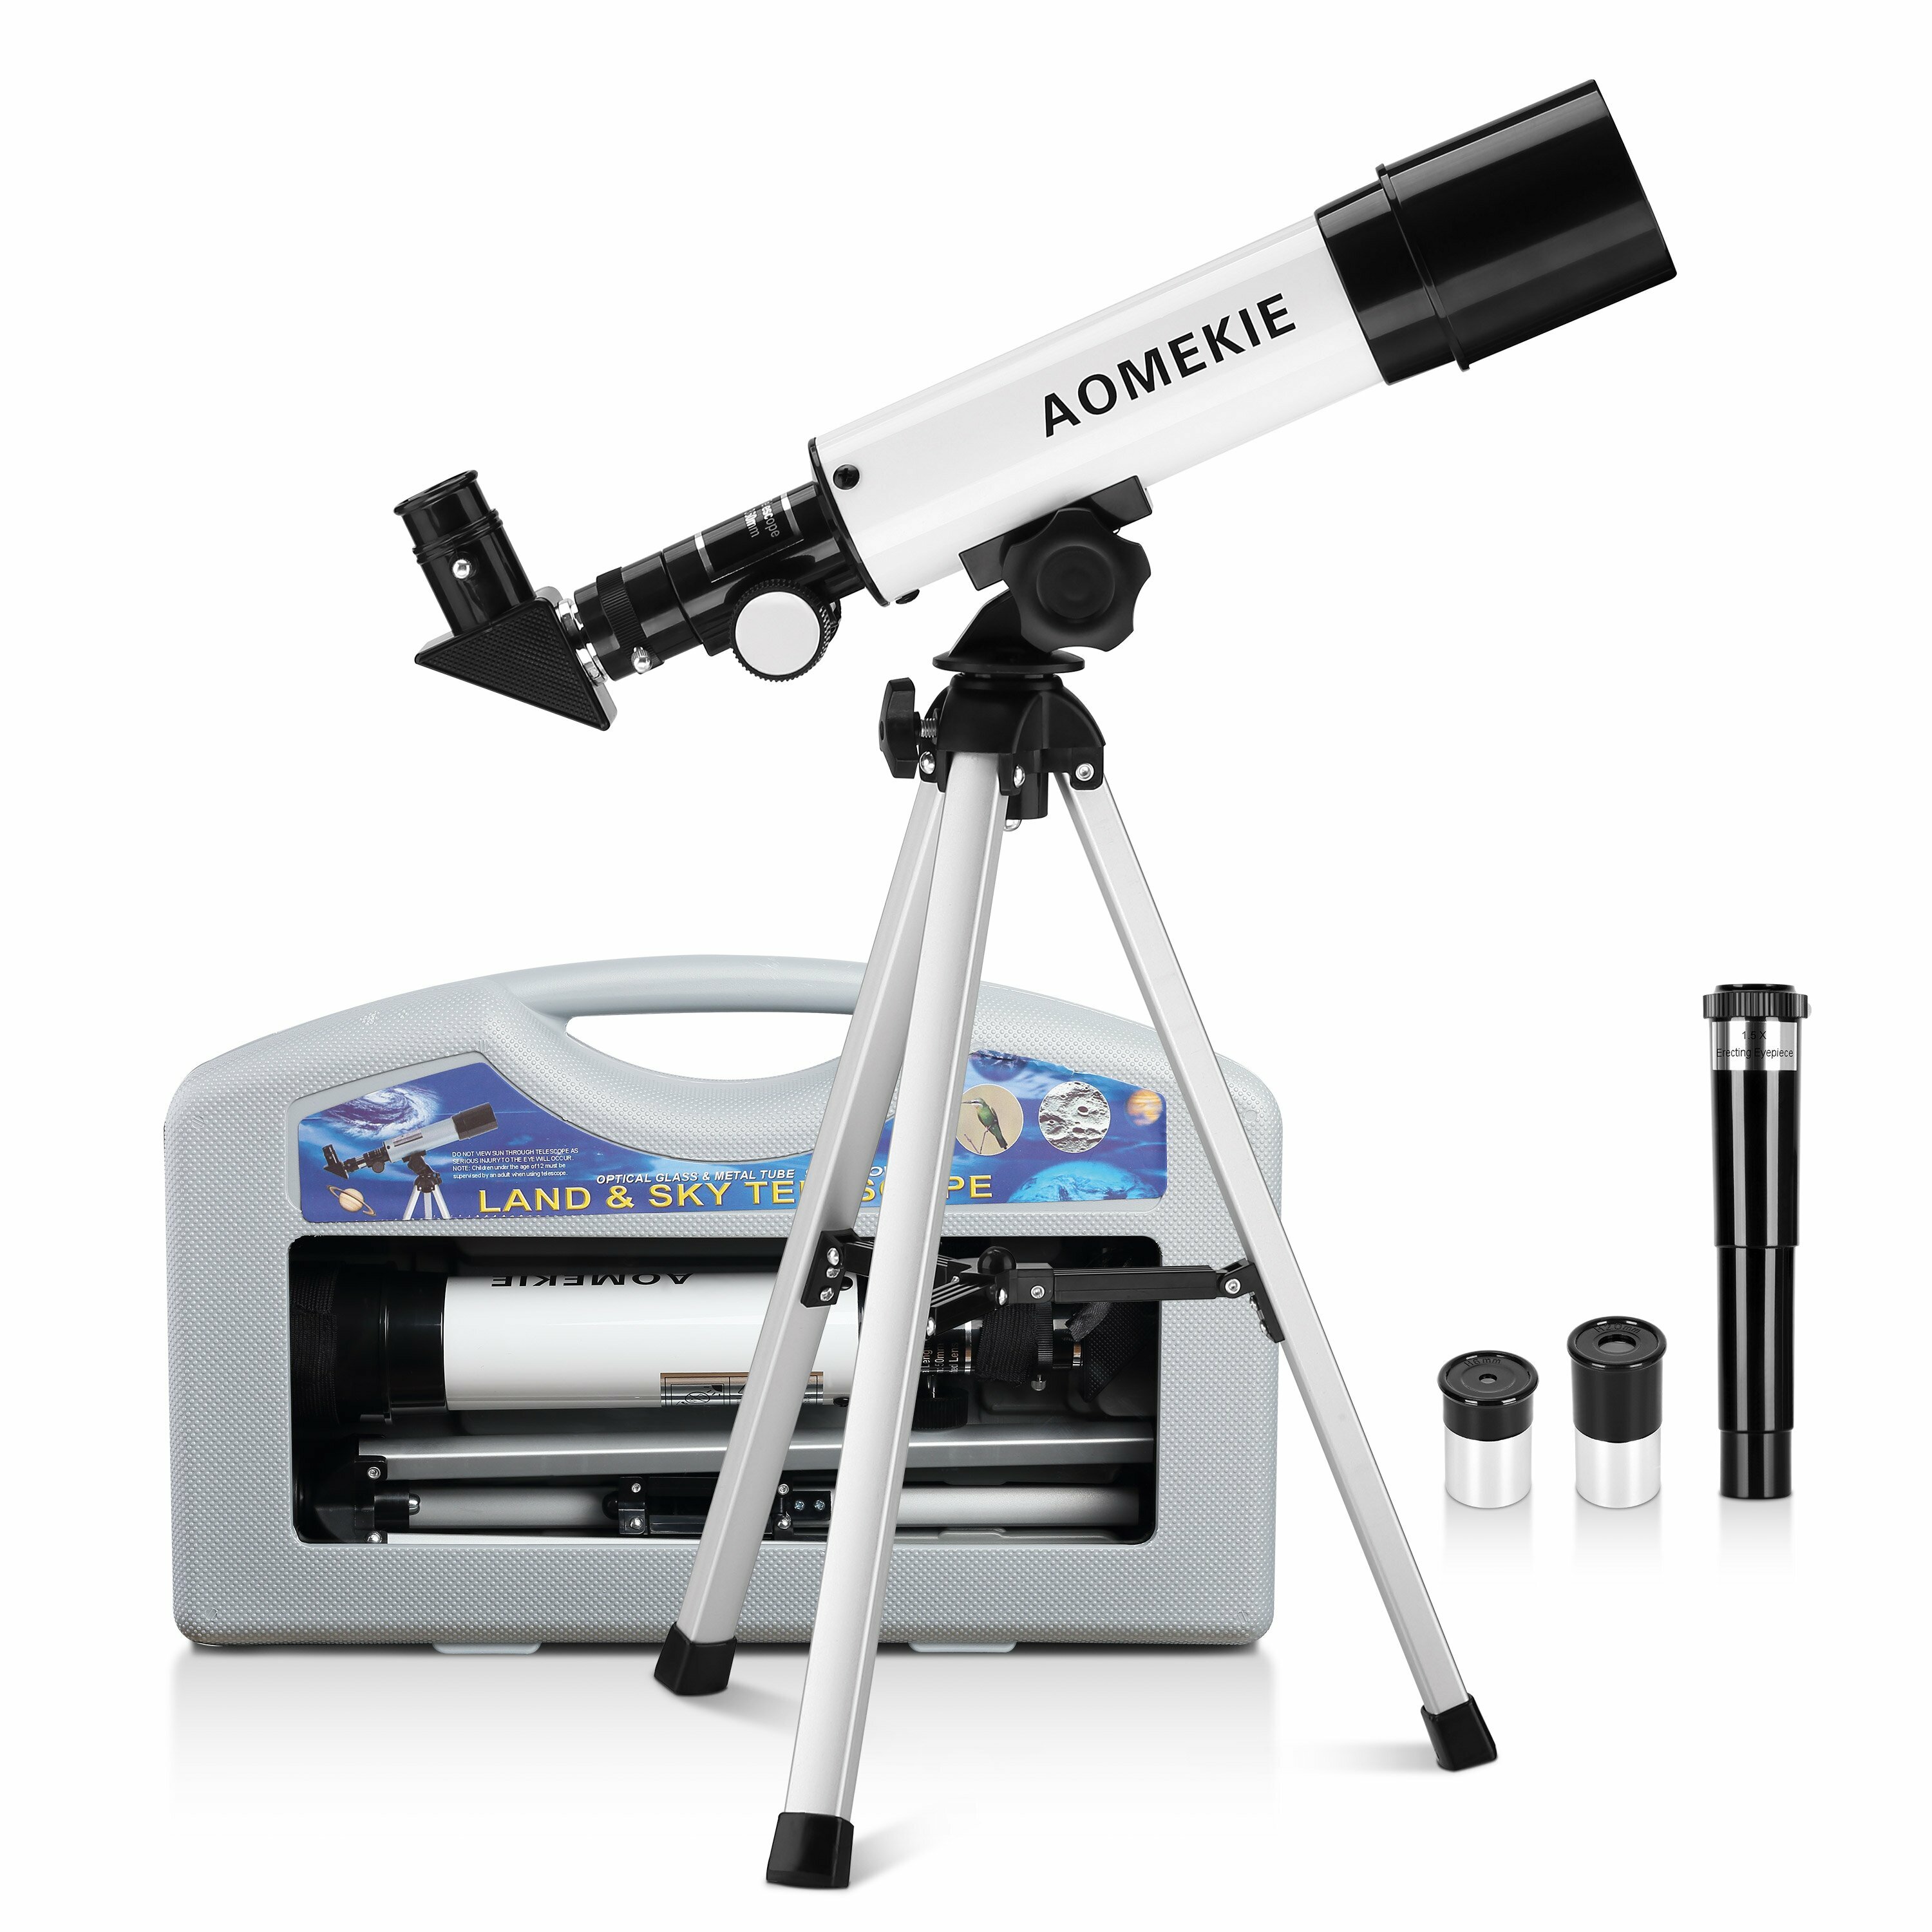 Рефракторный телескоп AOMEKIE для детей 50/360 мм для начинающих астрономов с чехлом для переноски, штативом, прямоугольным окуляром